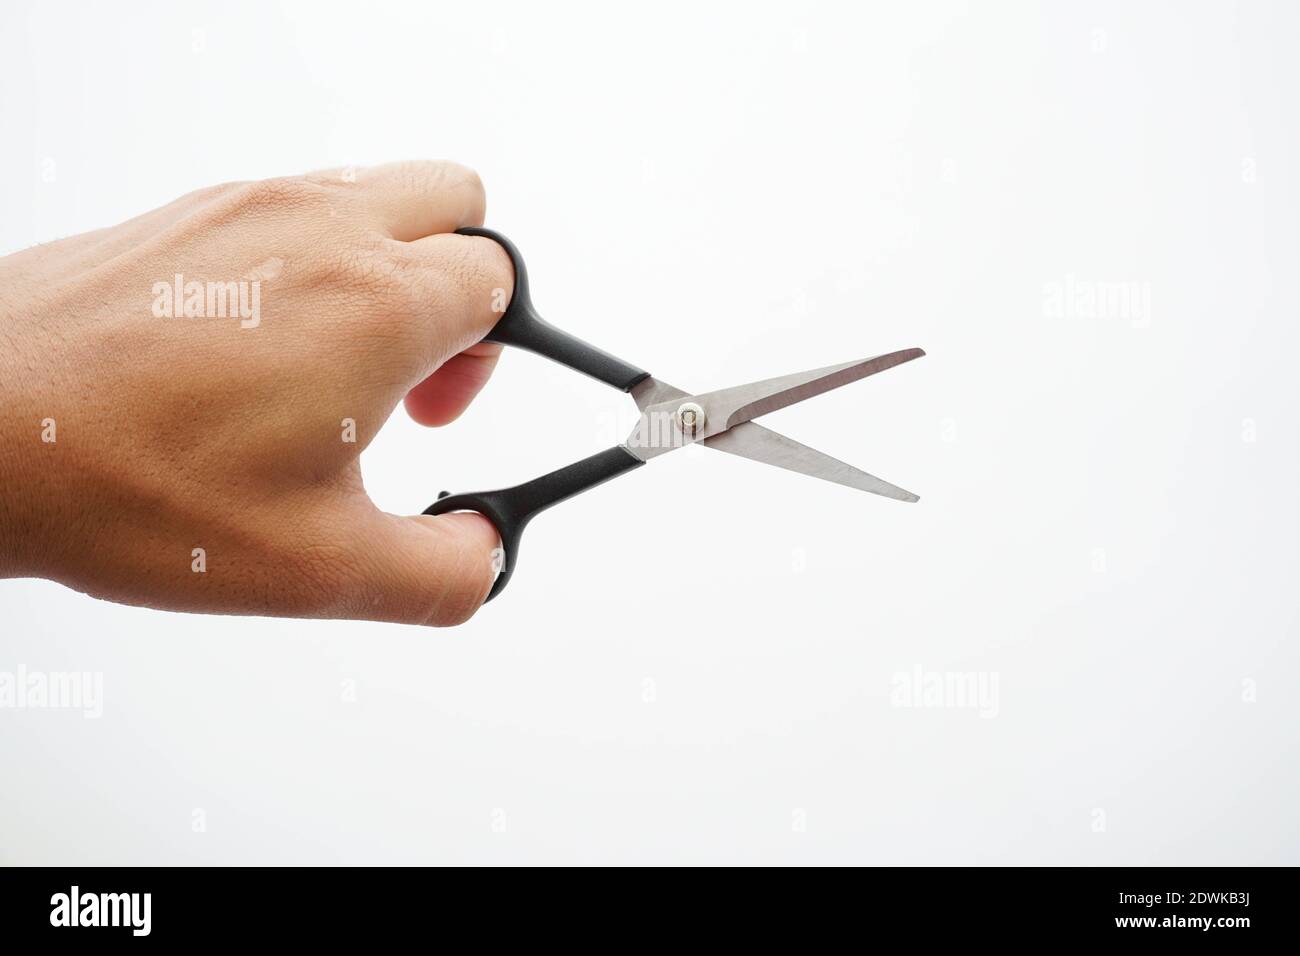 Abgeschnittene Hand Mit Schere Auf Weißem Hintergrund Stockfotografie -  Alamy